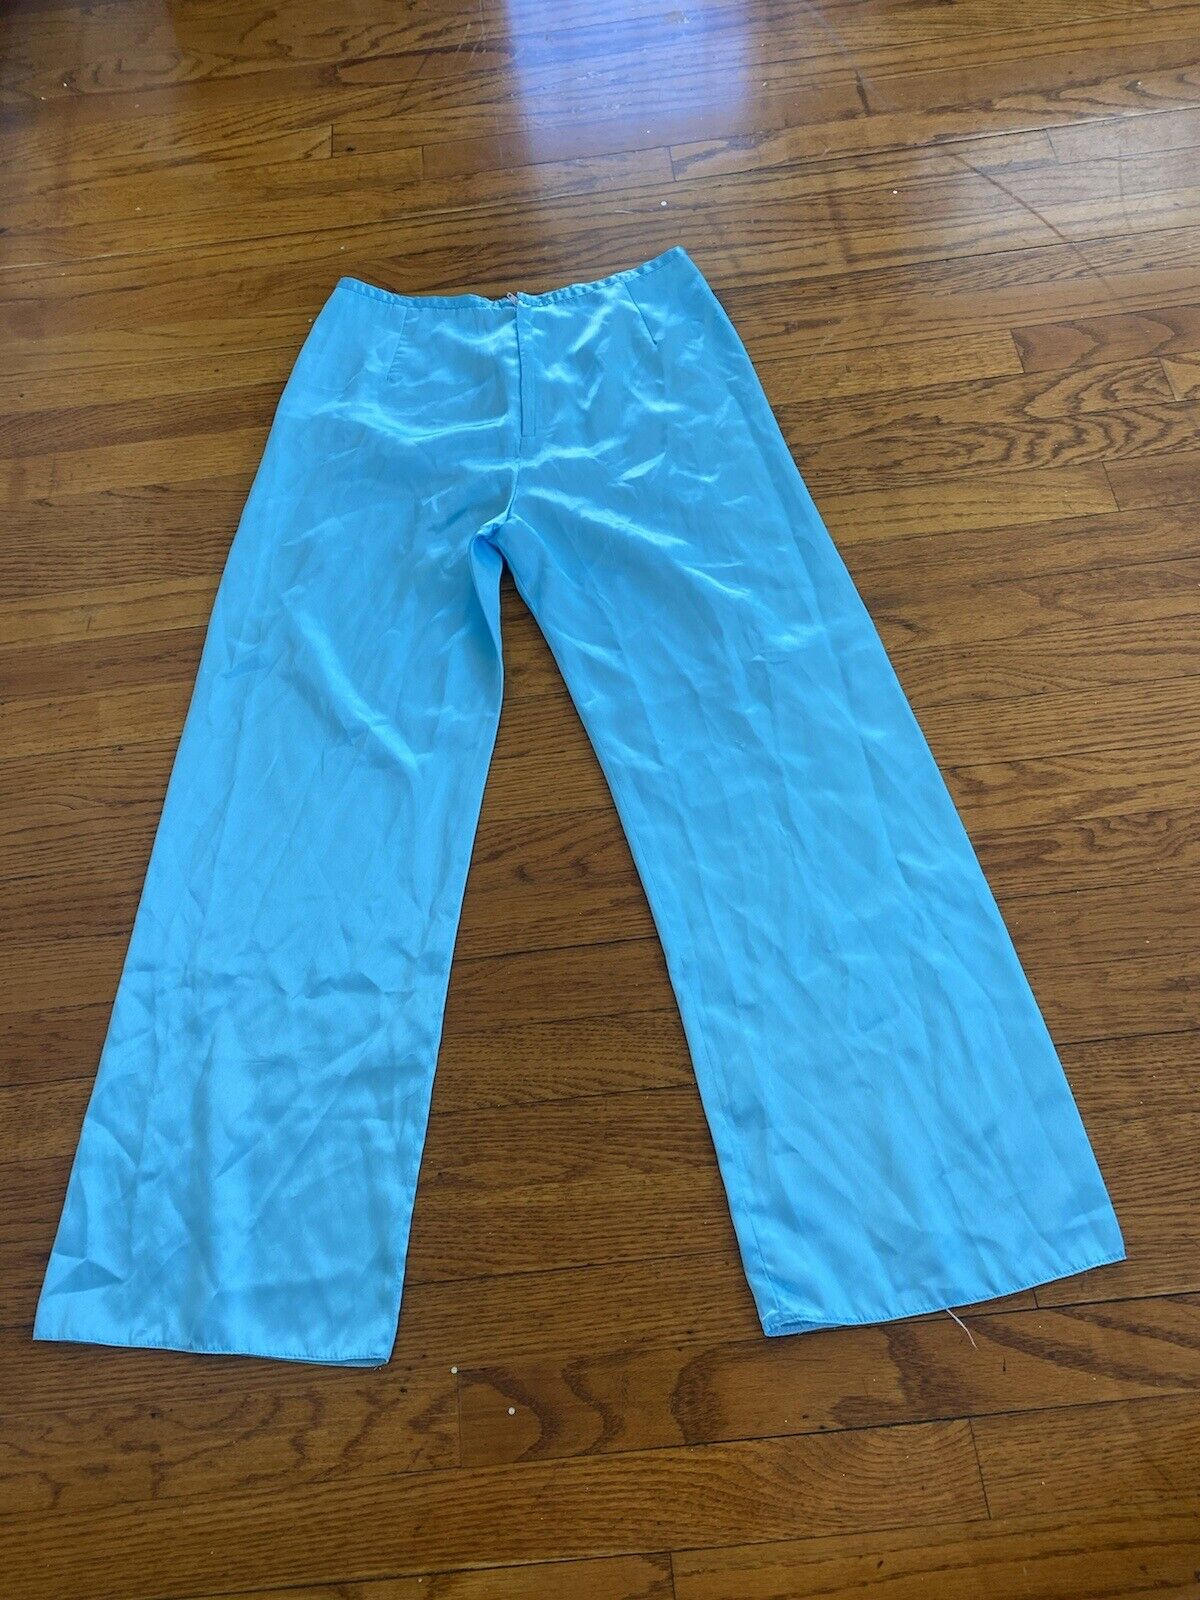 Blue Silky Pants - Unbranded - Women’s XXS